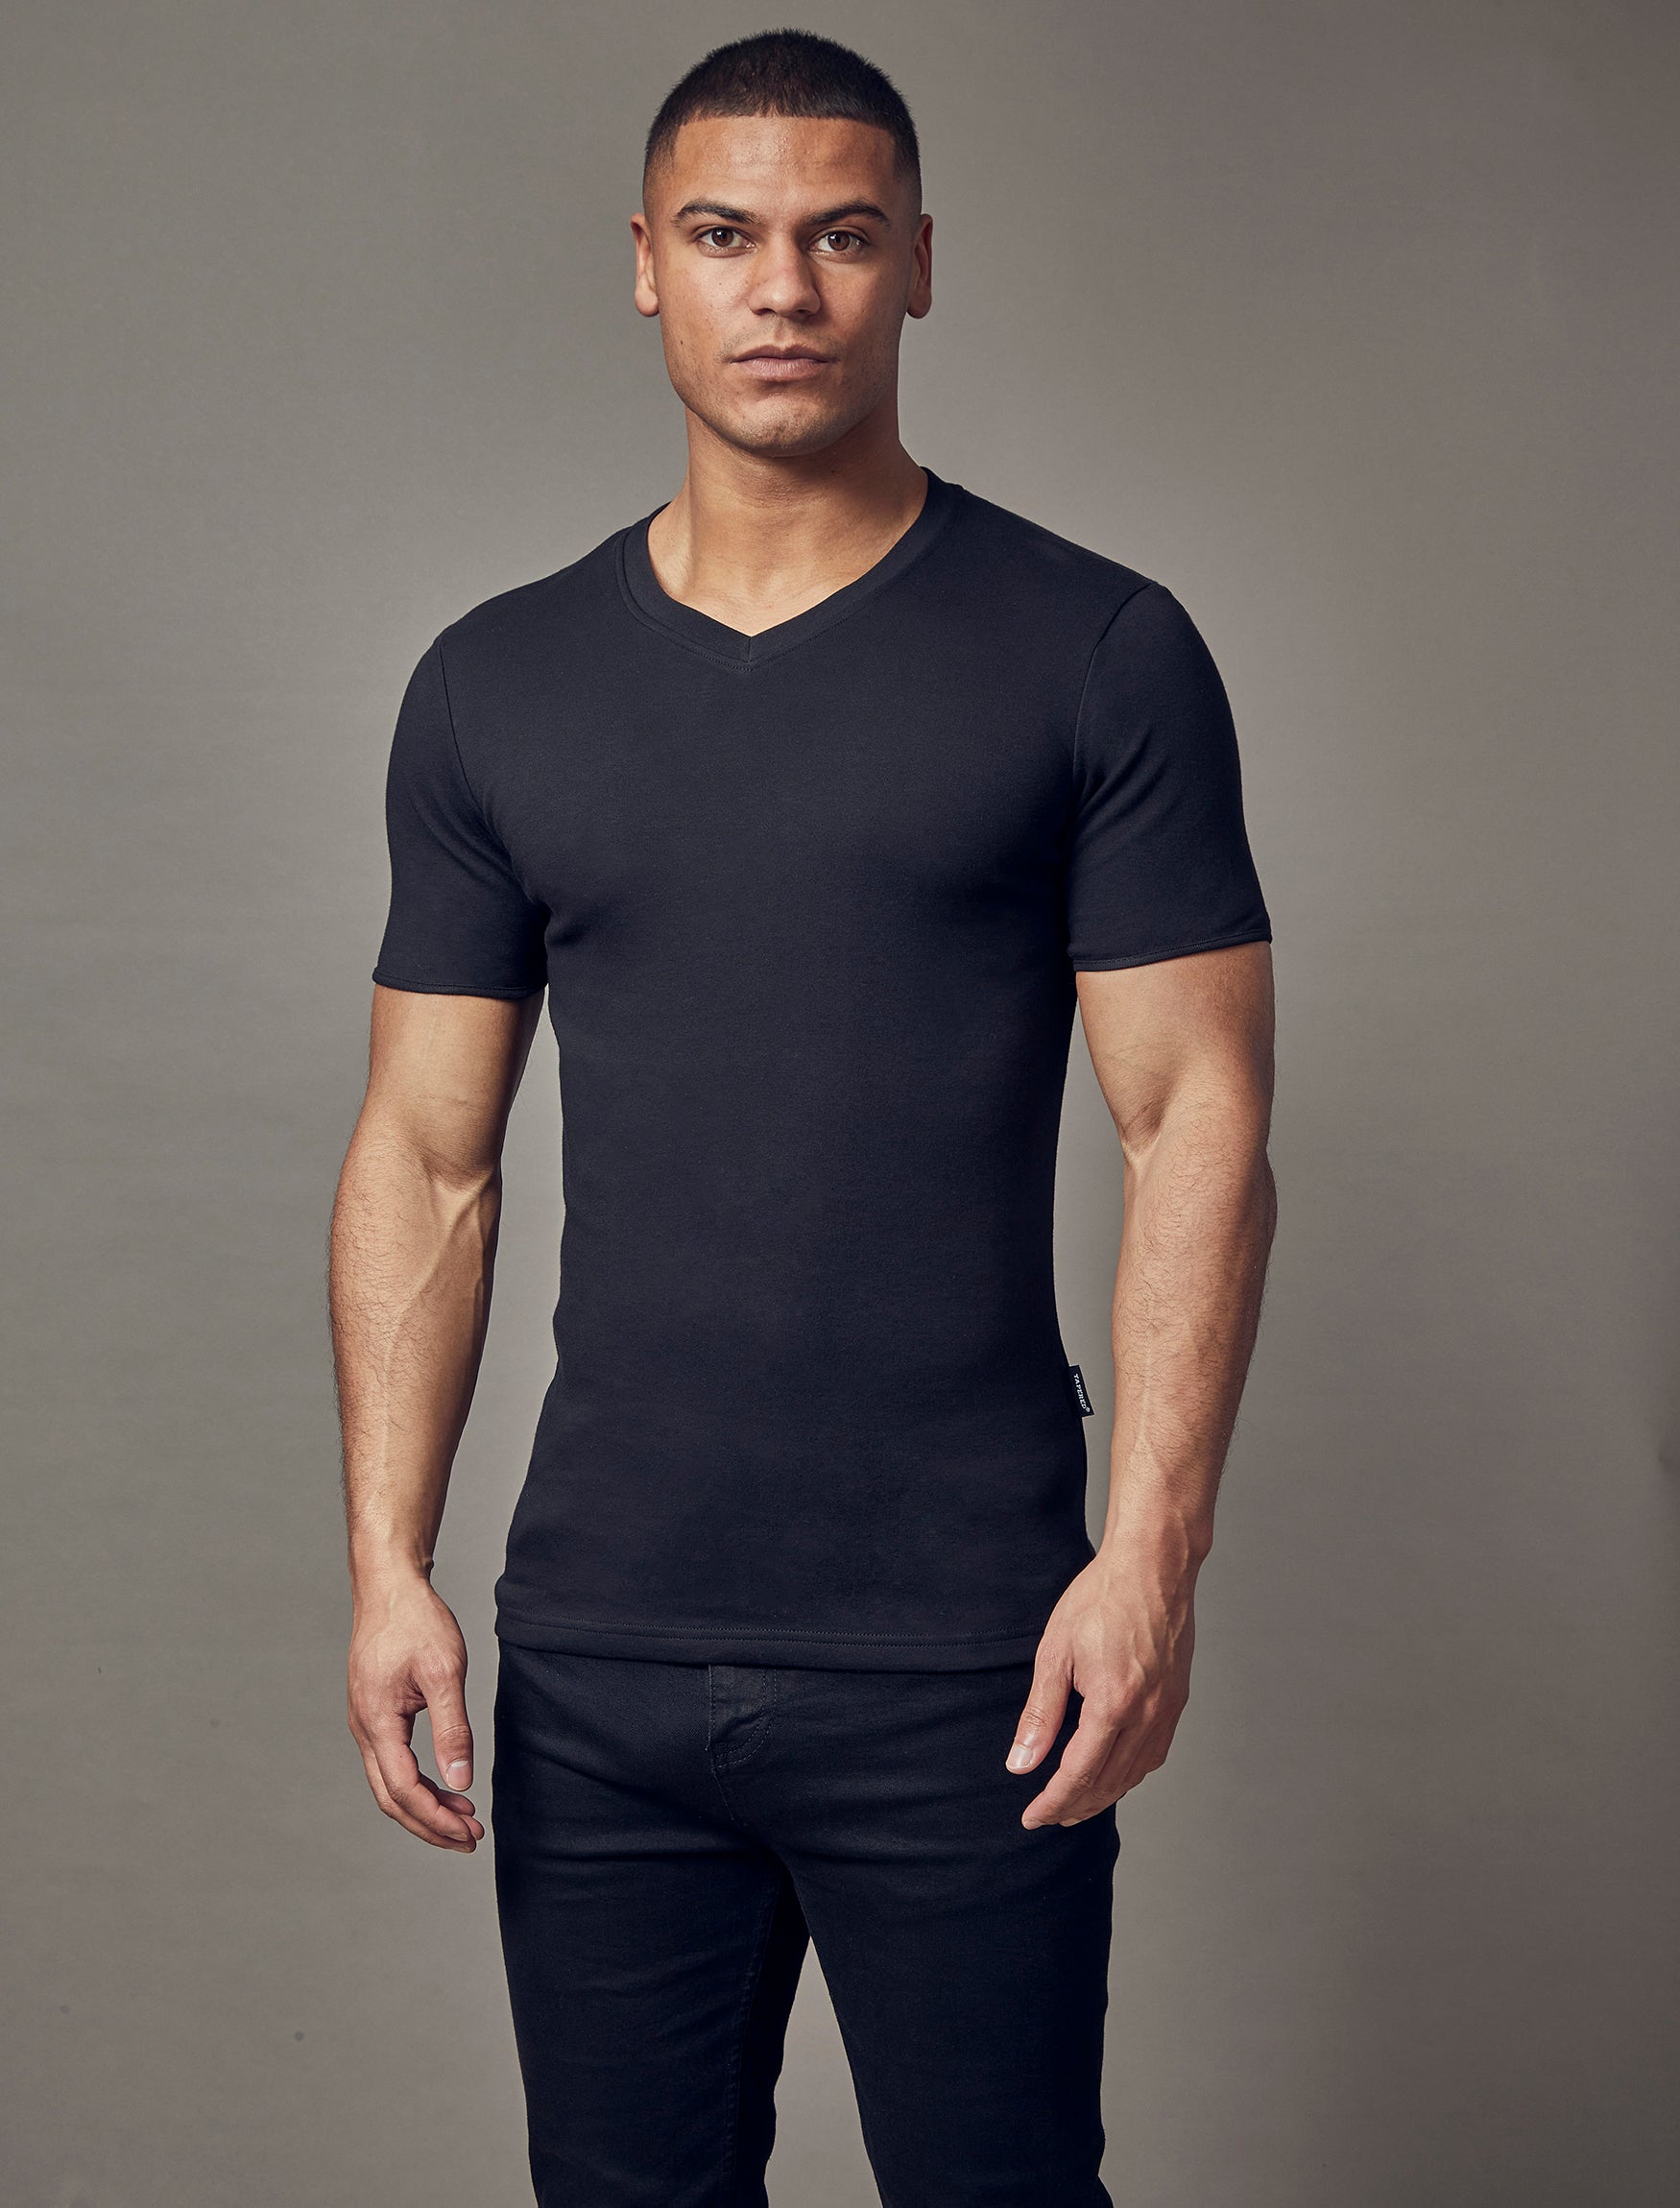 Solrig Styrke jernbane Black V-Neck Tapered Fit T-shirt | V-Neck Muscle Fit | Tapered Menswear